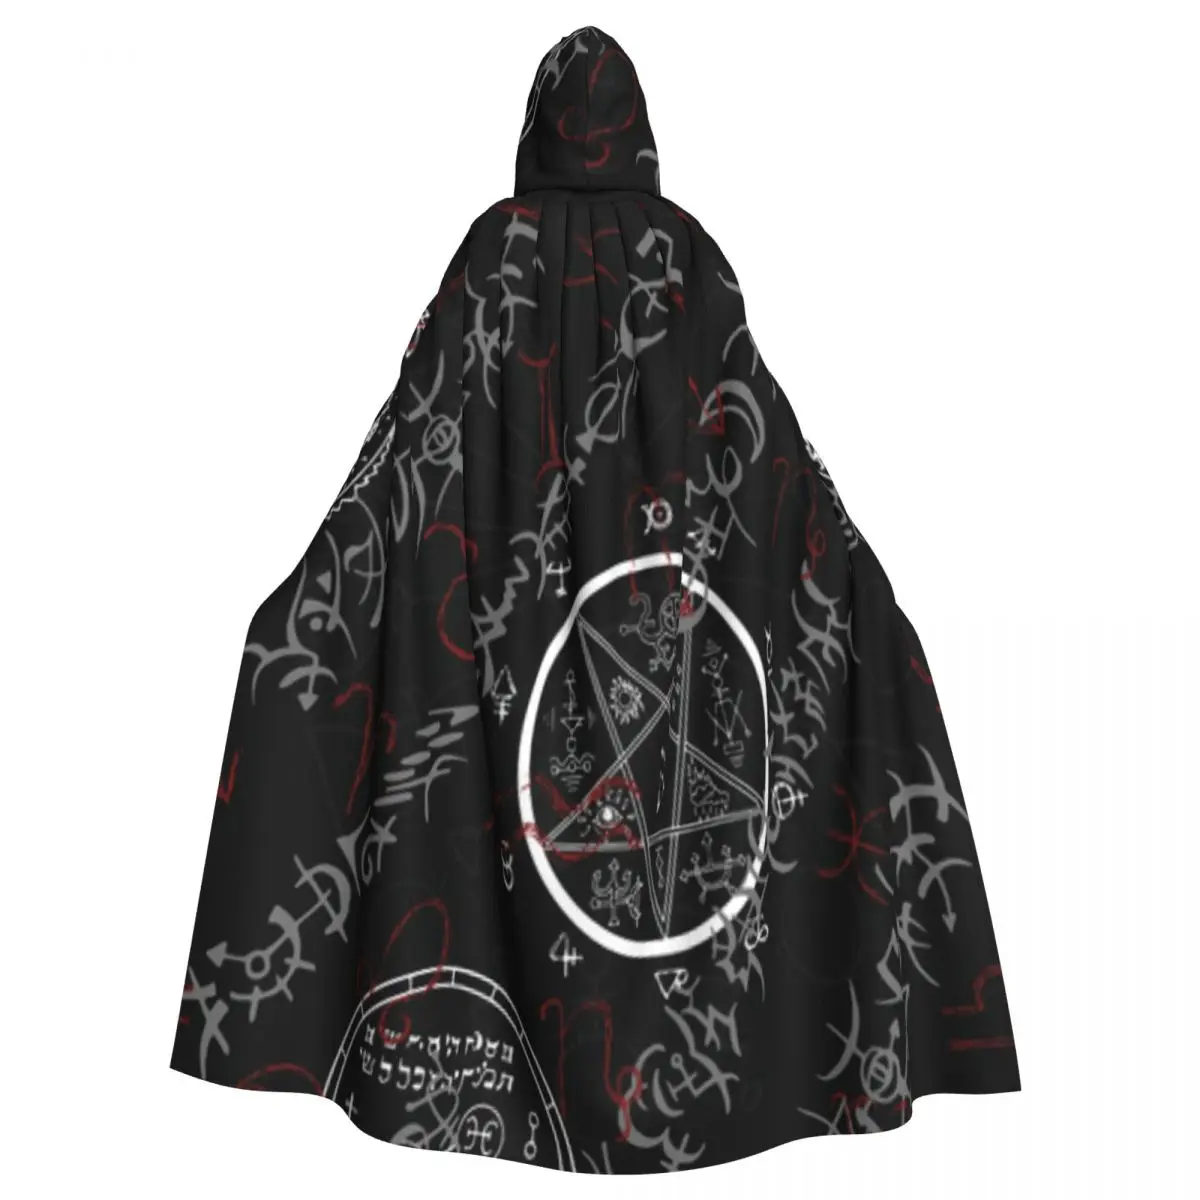 

Long Cape Cloak Mystic Zodiac Occult Symbols Hooded Cloak Coat Autumn Hoodies